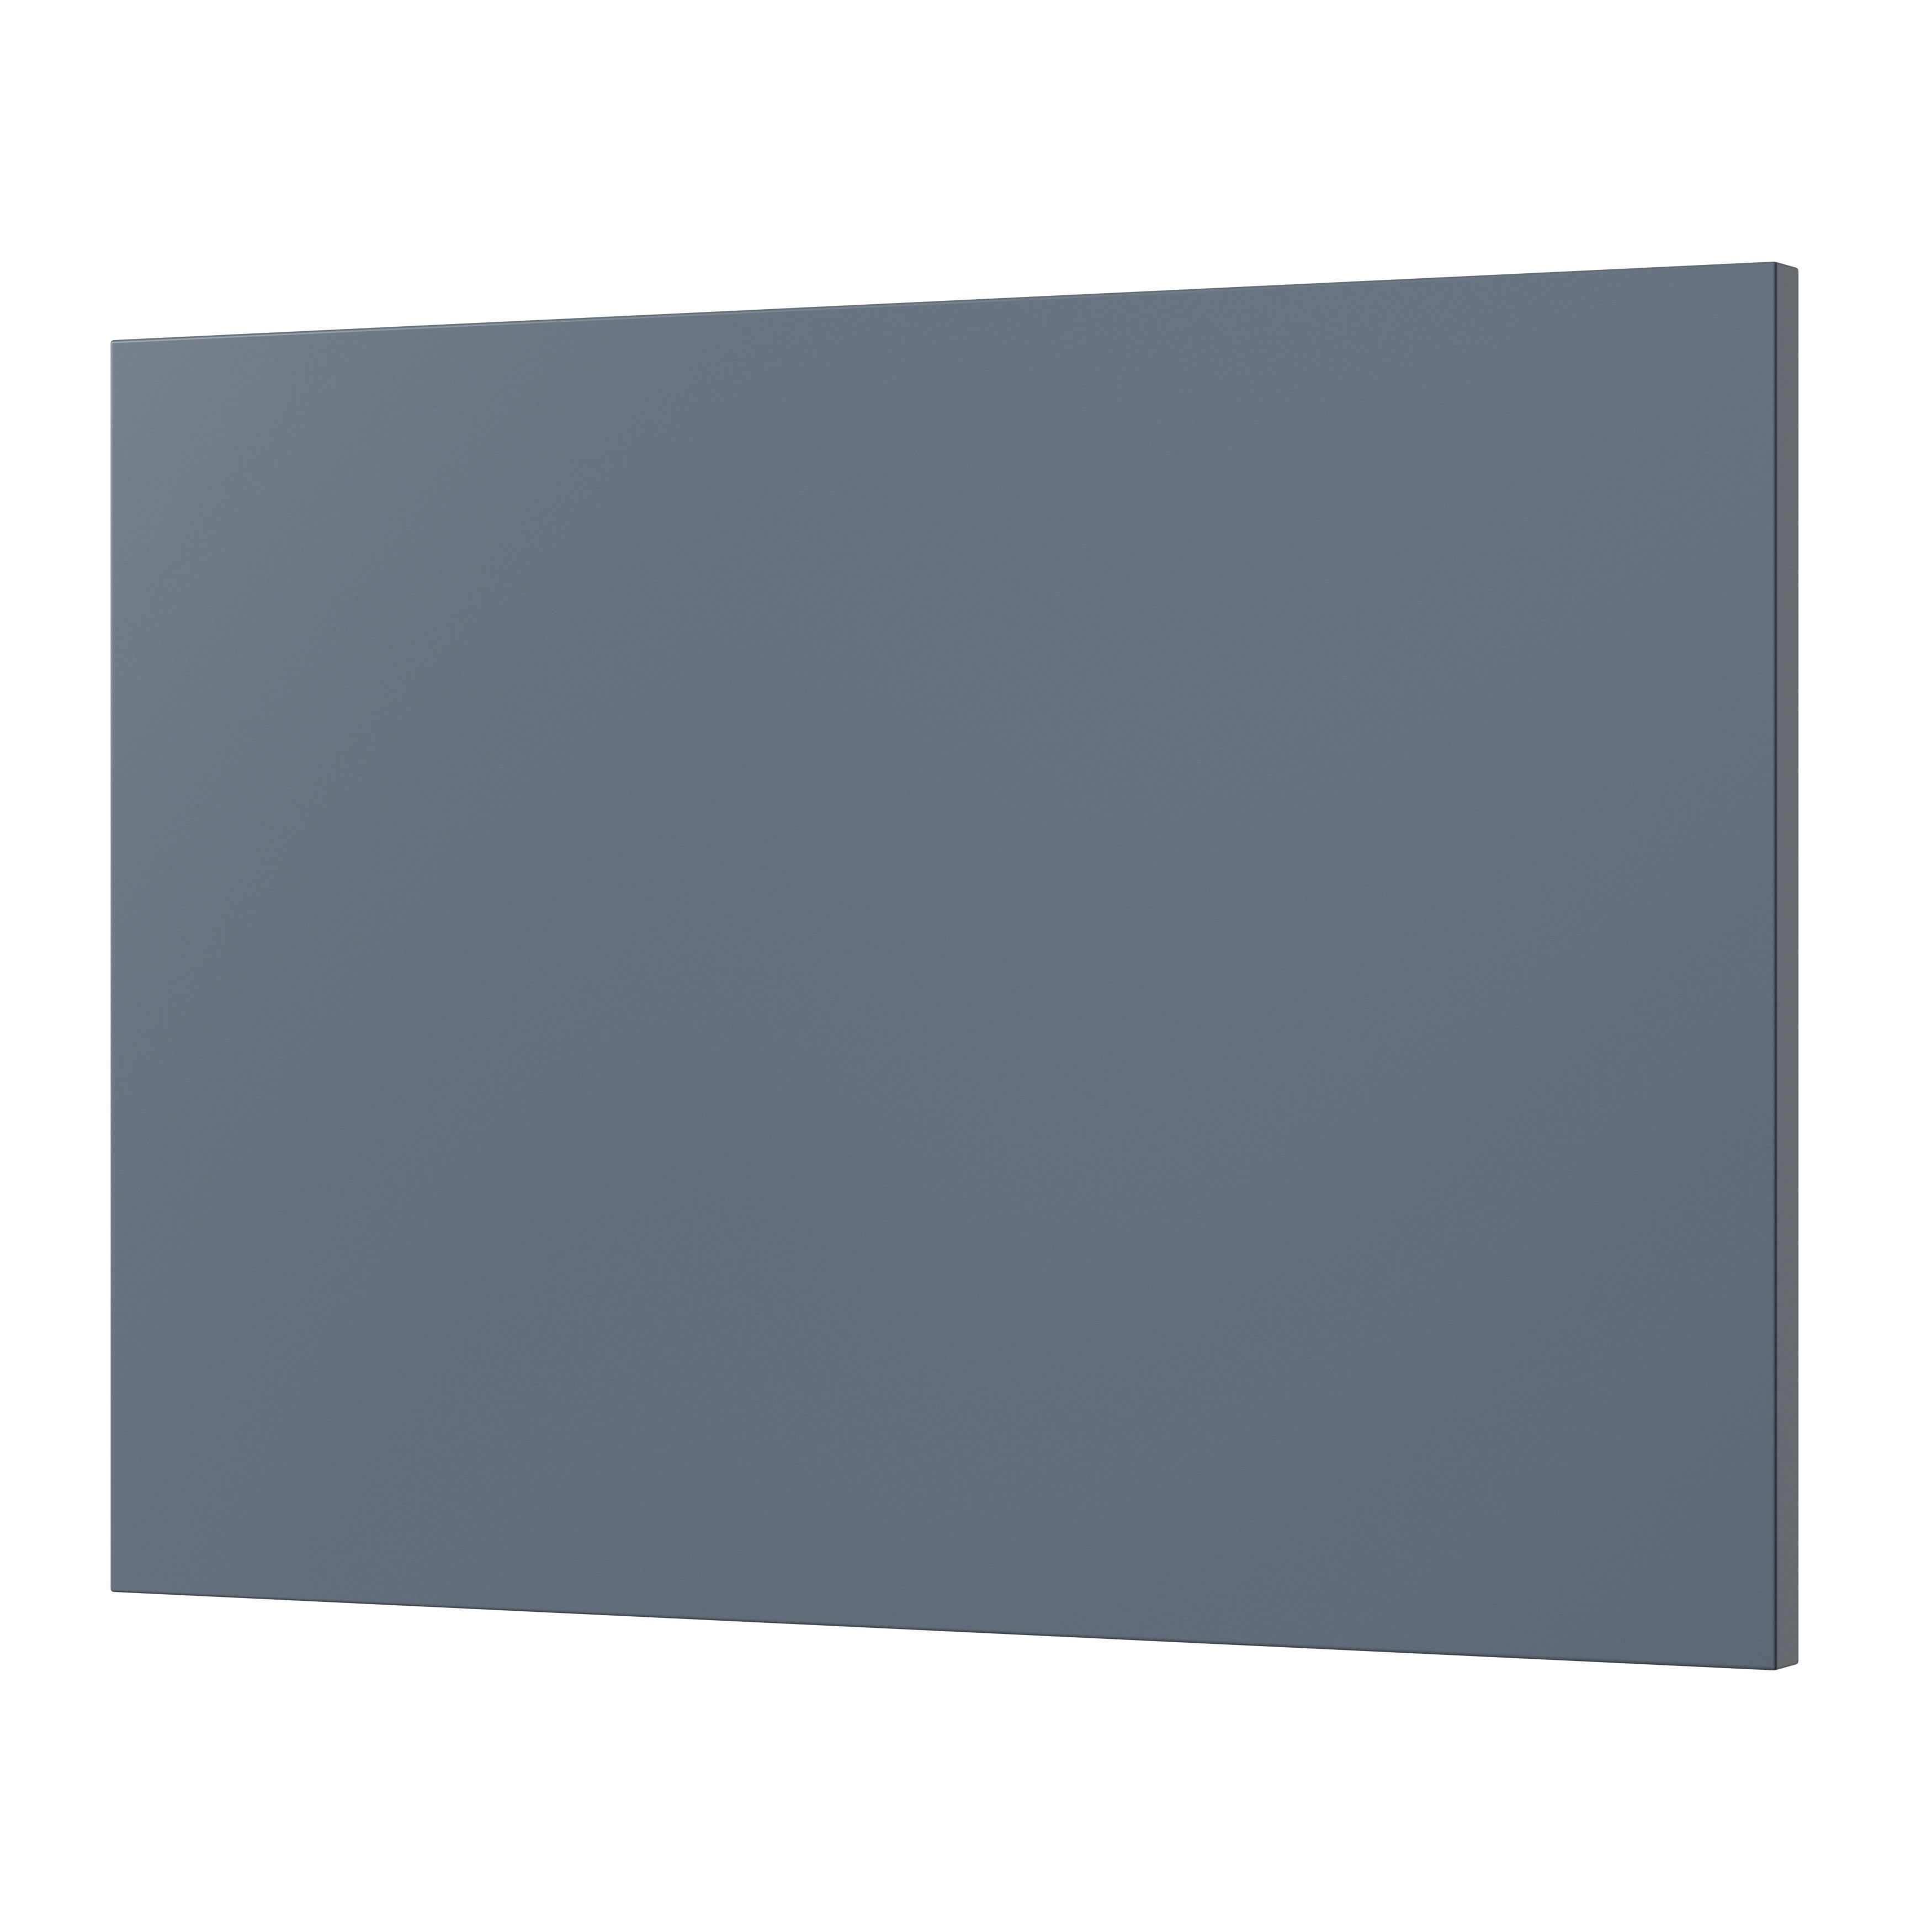 GoodHome Alisma Matt blue Drawer front, bridging door & bi fold door, (W)500mm (H)356mm (T)18mm